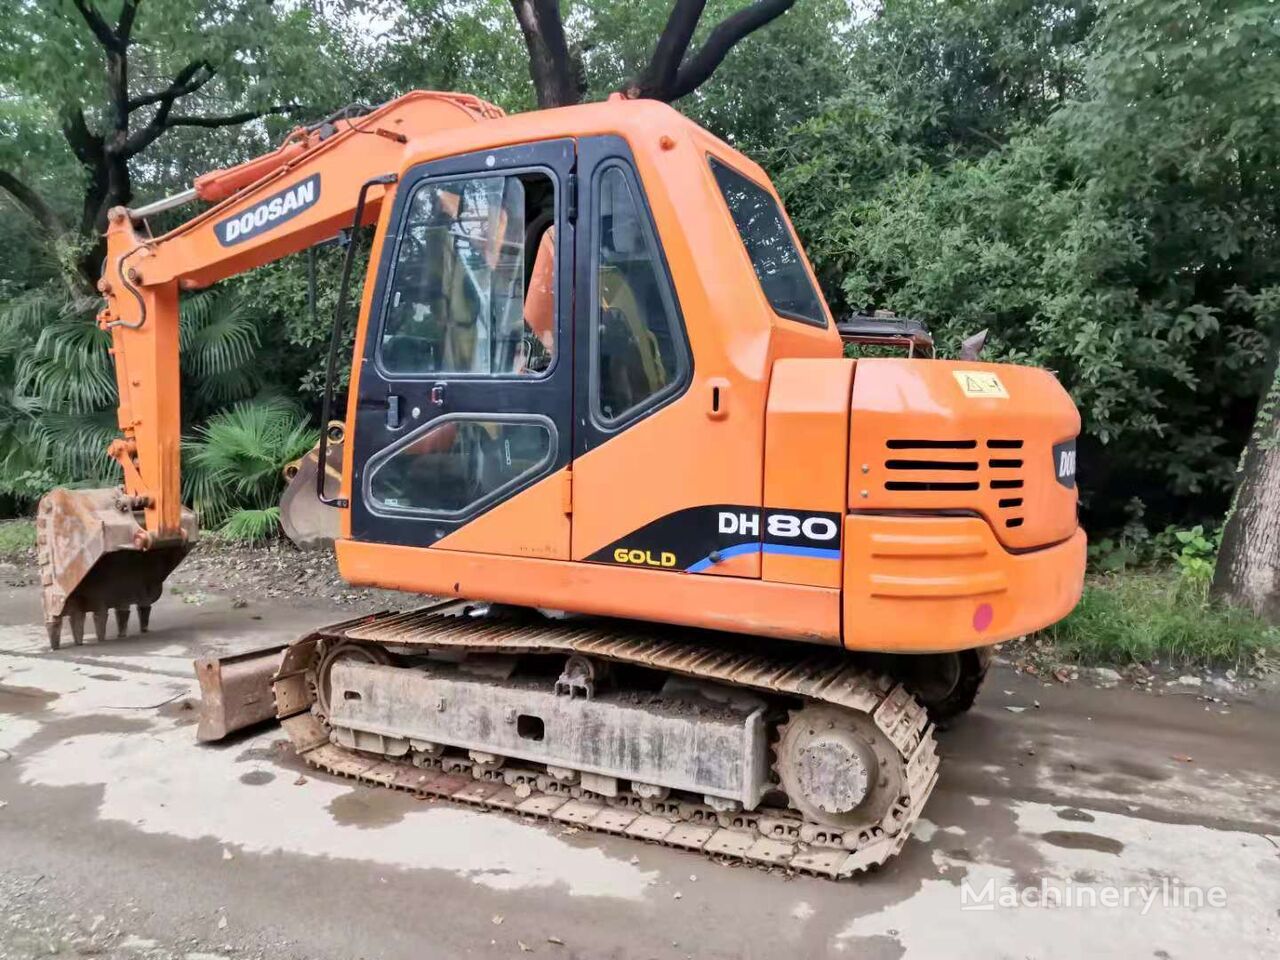 Doosan DH80 tracked excavator